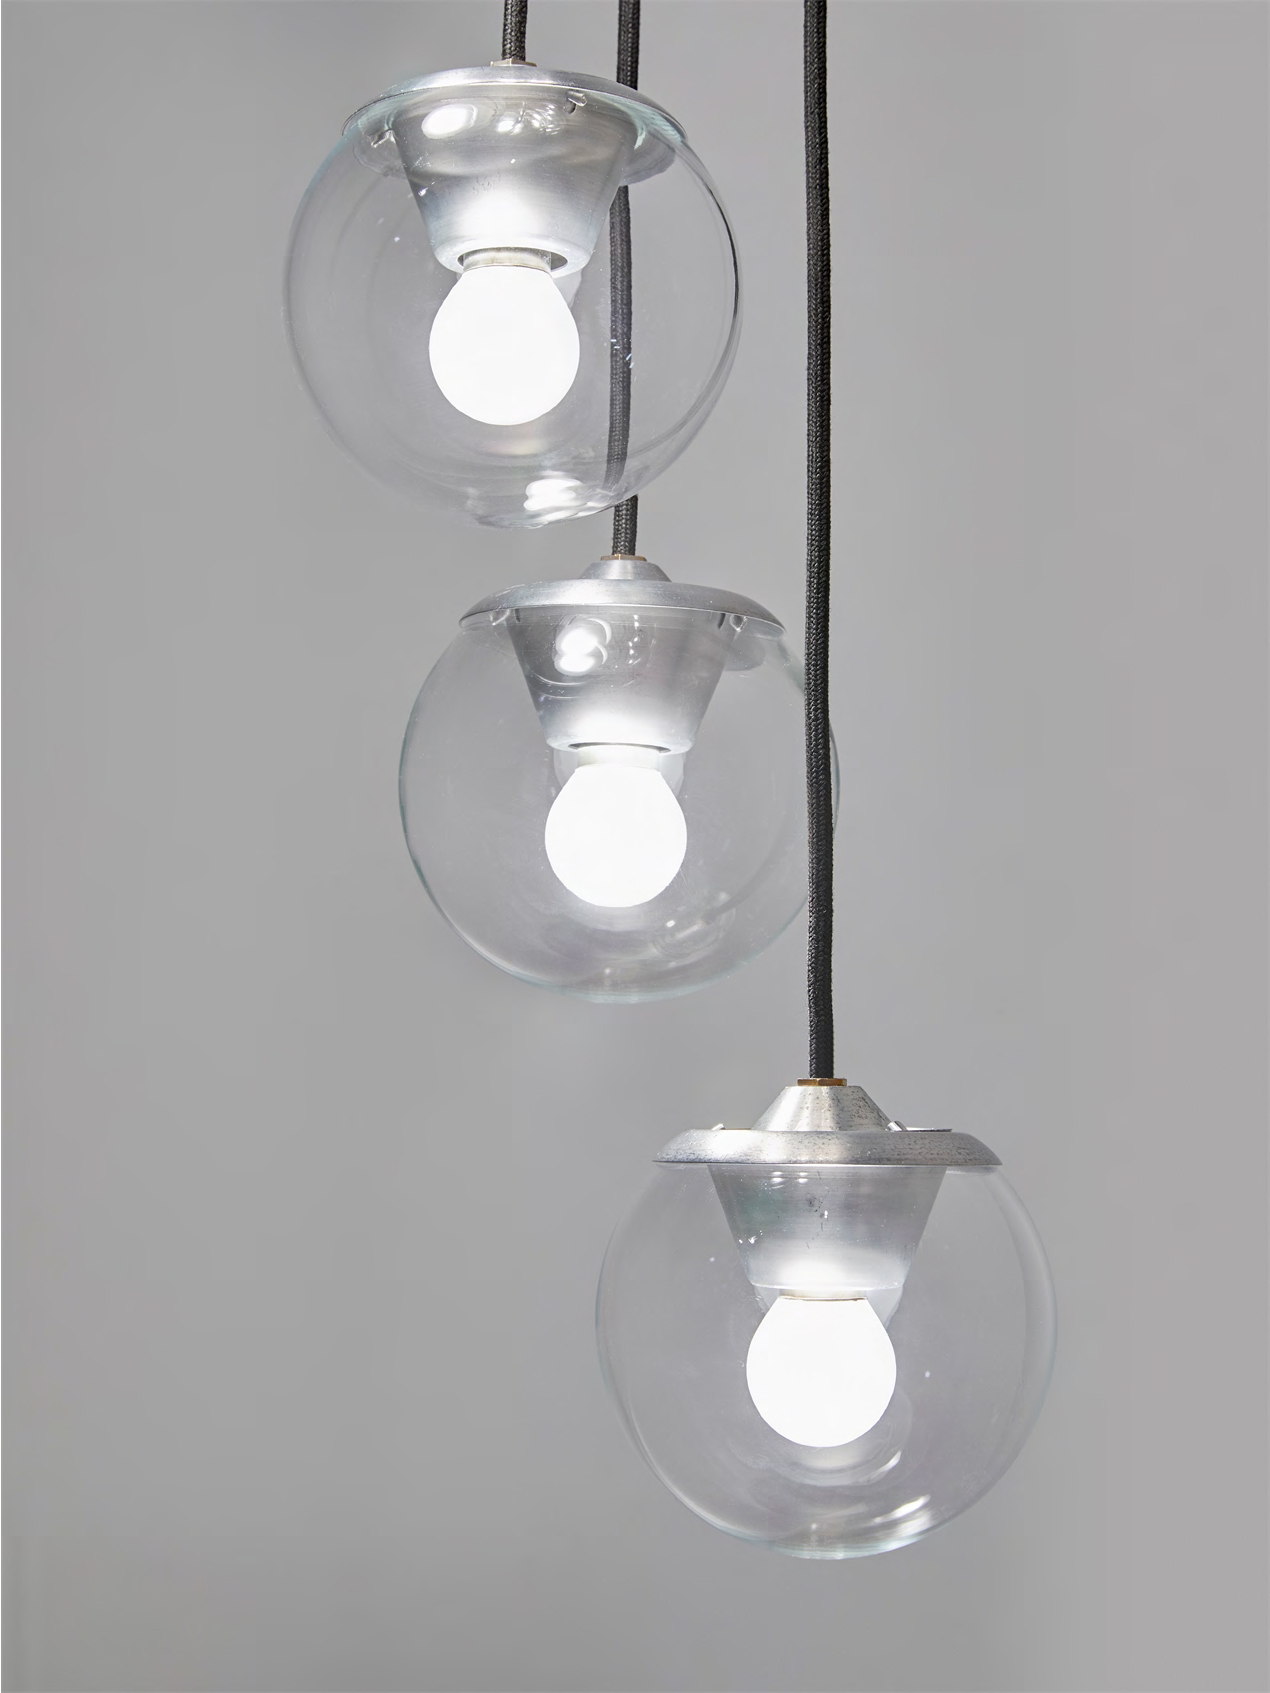 2095/9 grey - Gino Sarfatti - Pendant light - Galerie kreo